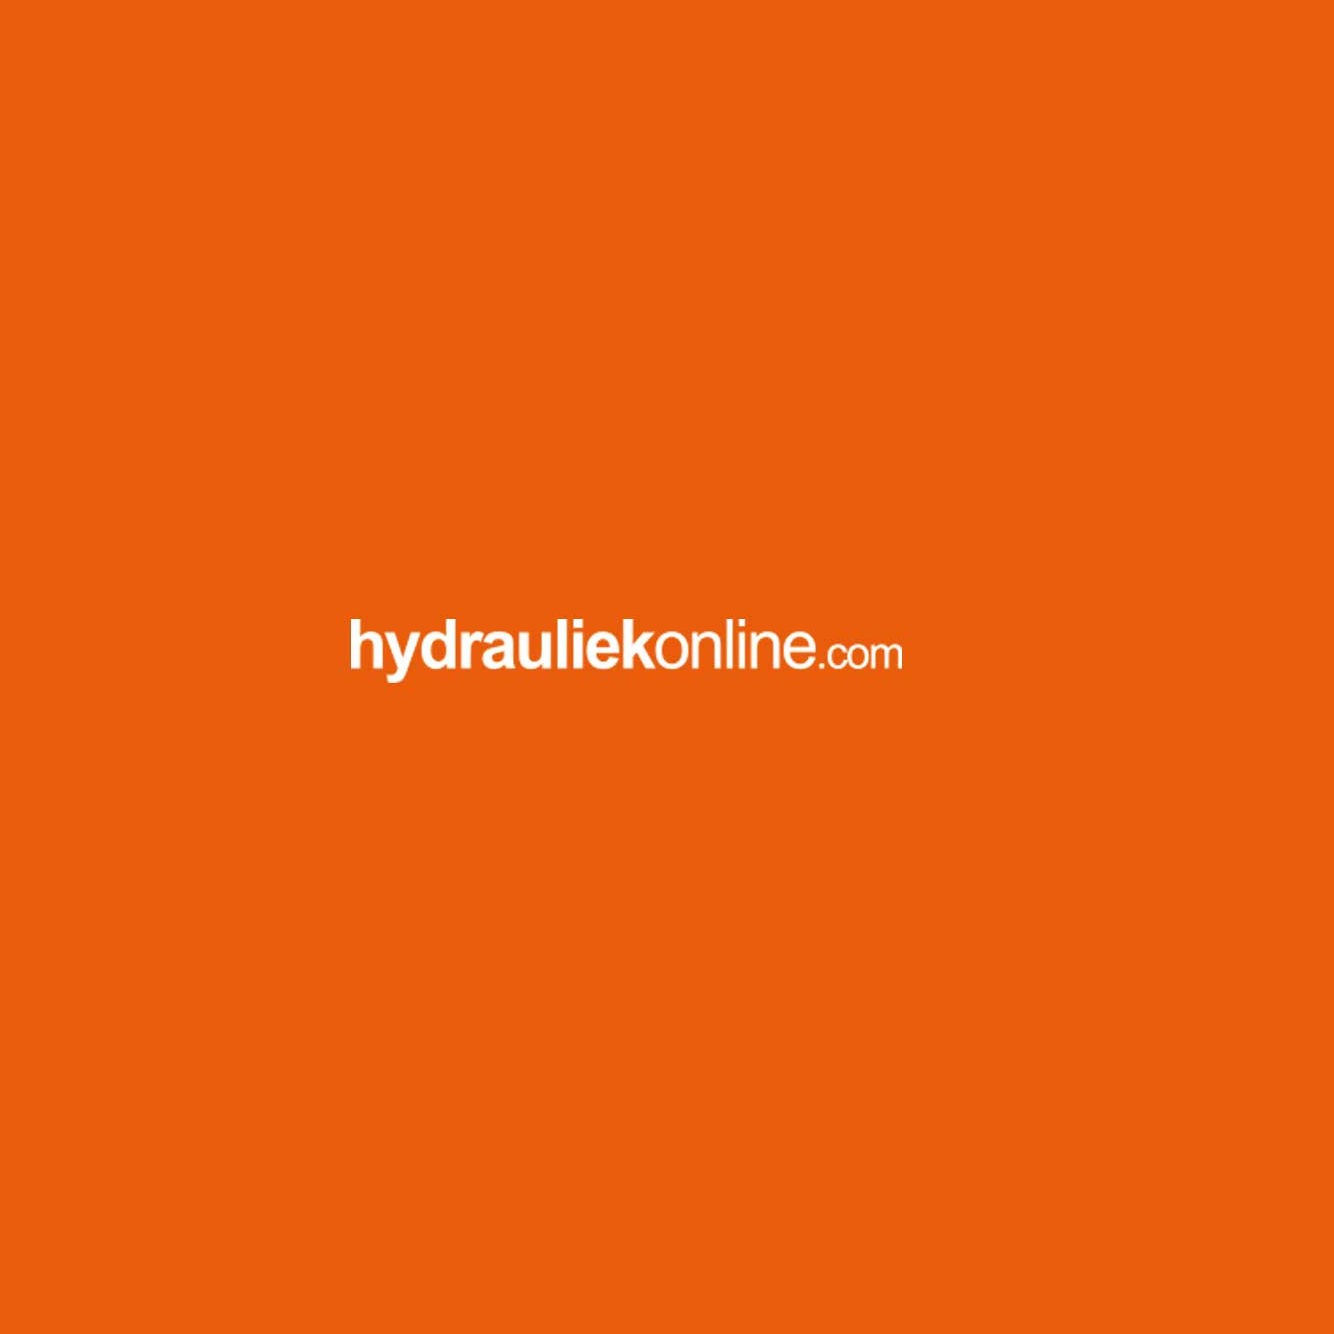 hydrauliek-online-14175.jpg